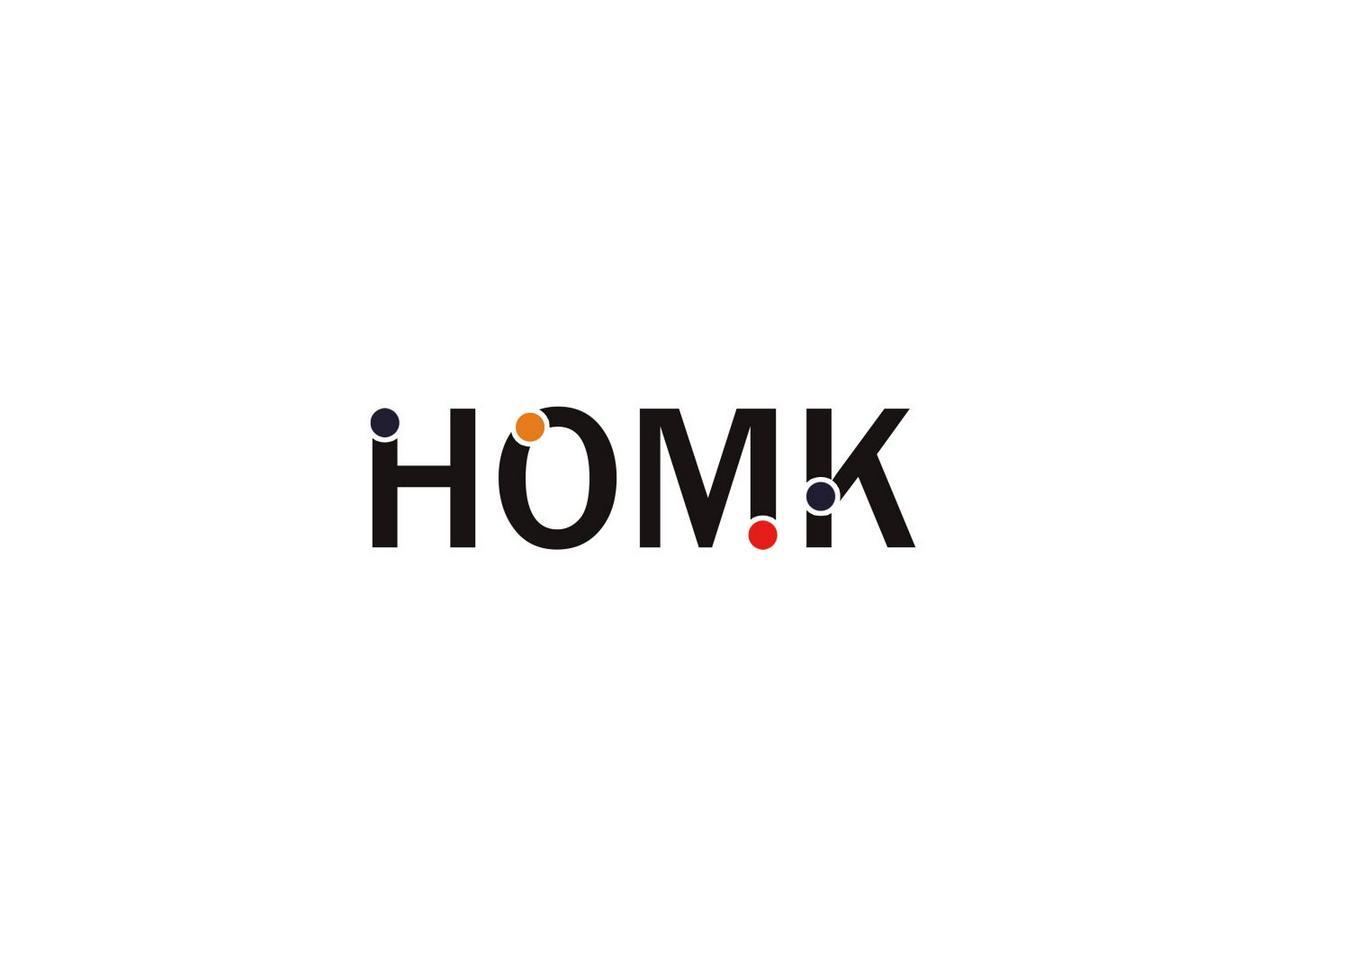 HOMK 商标公告